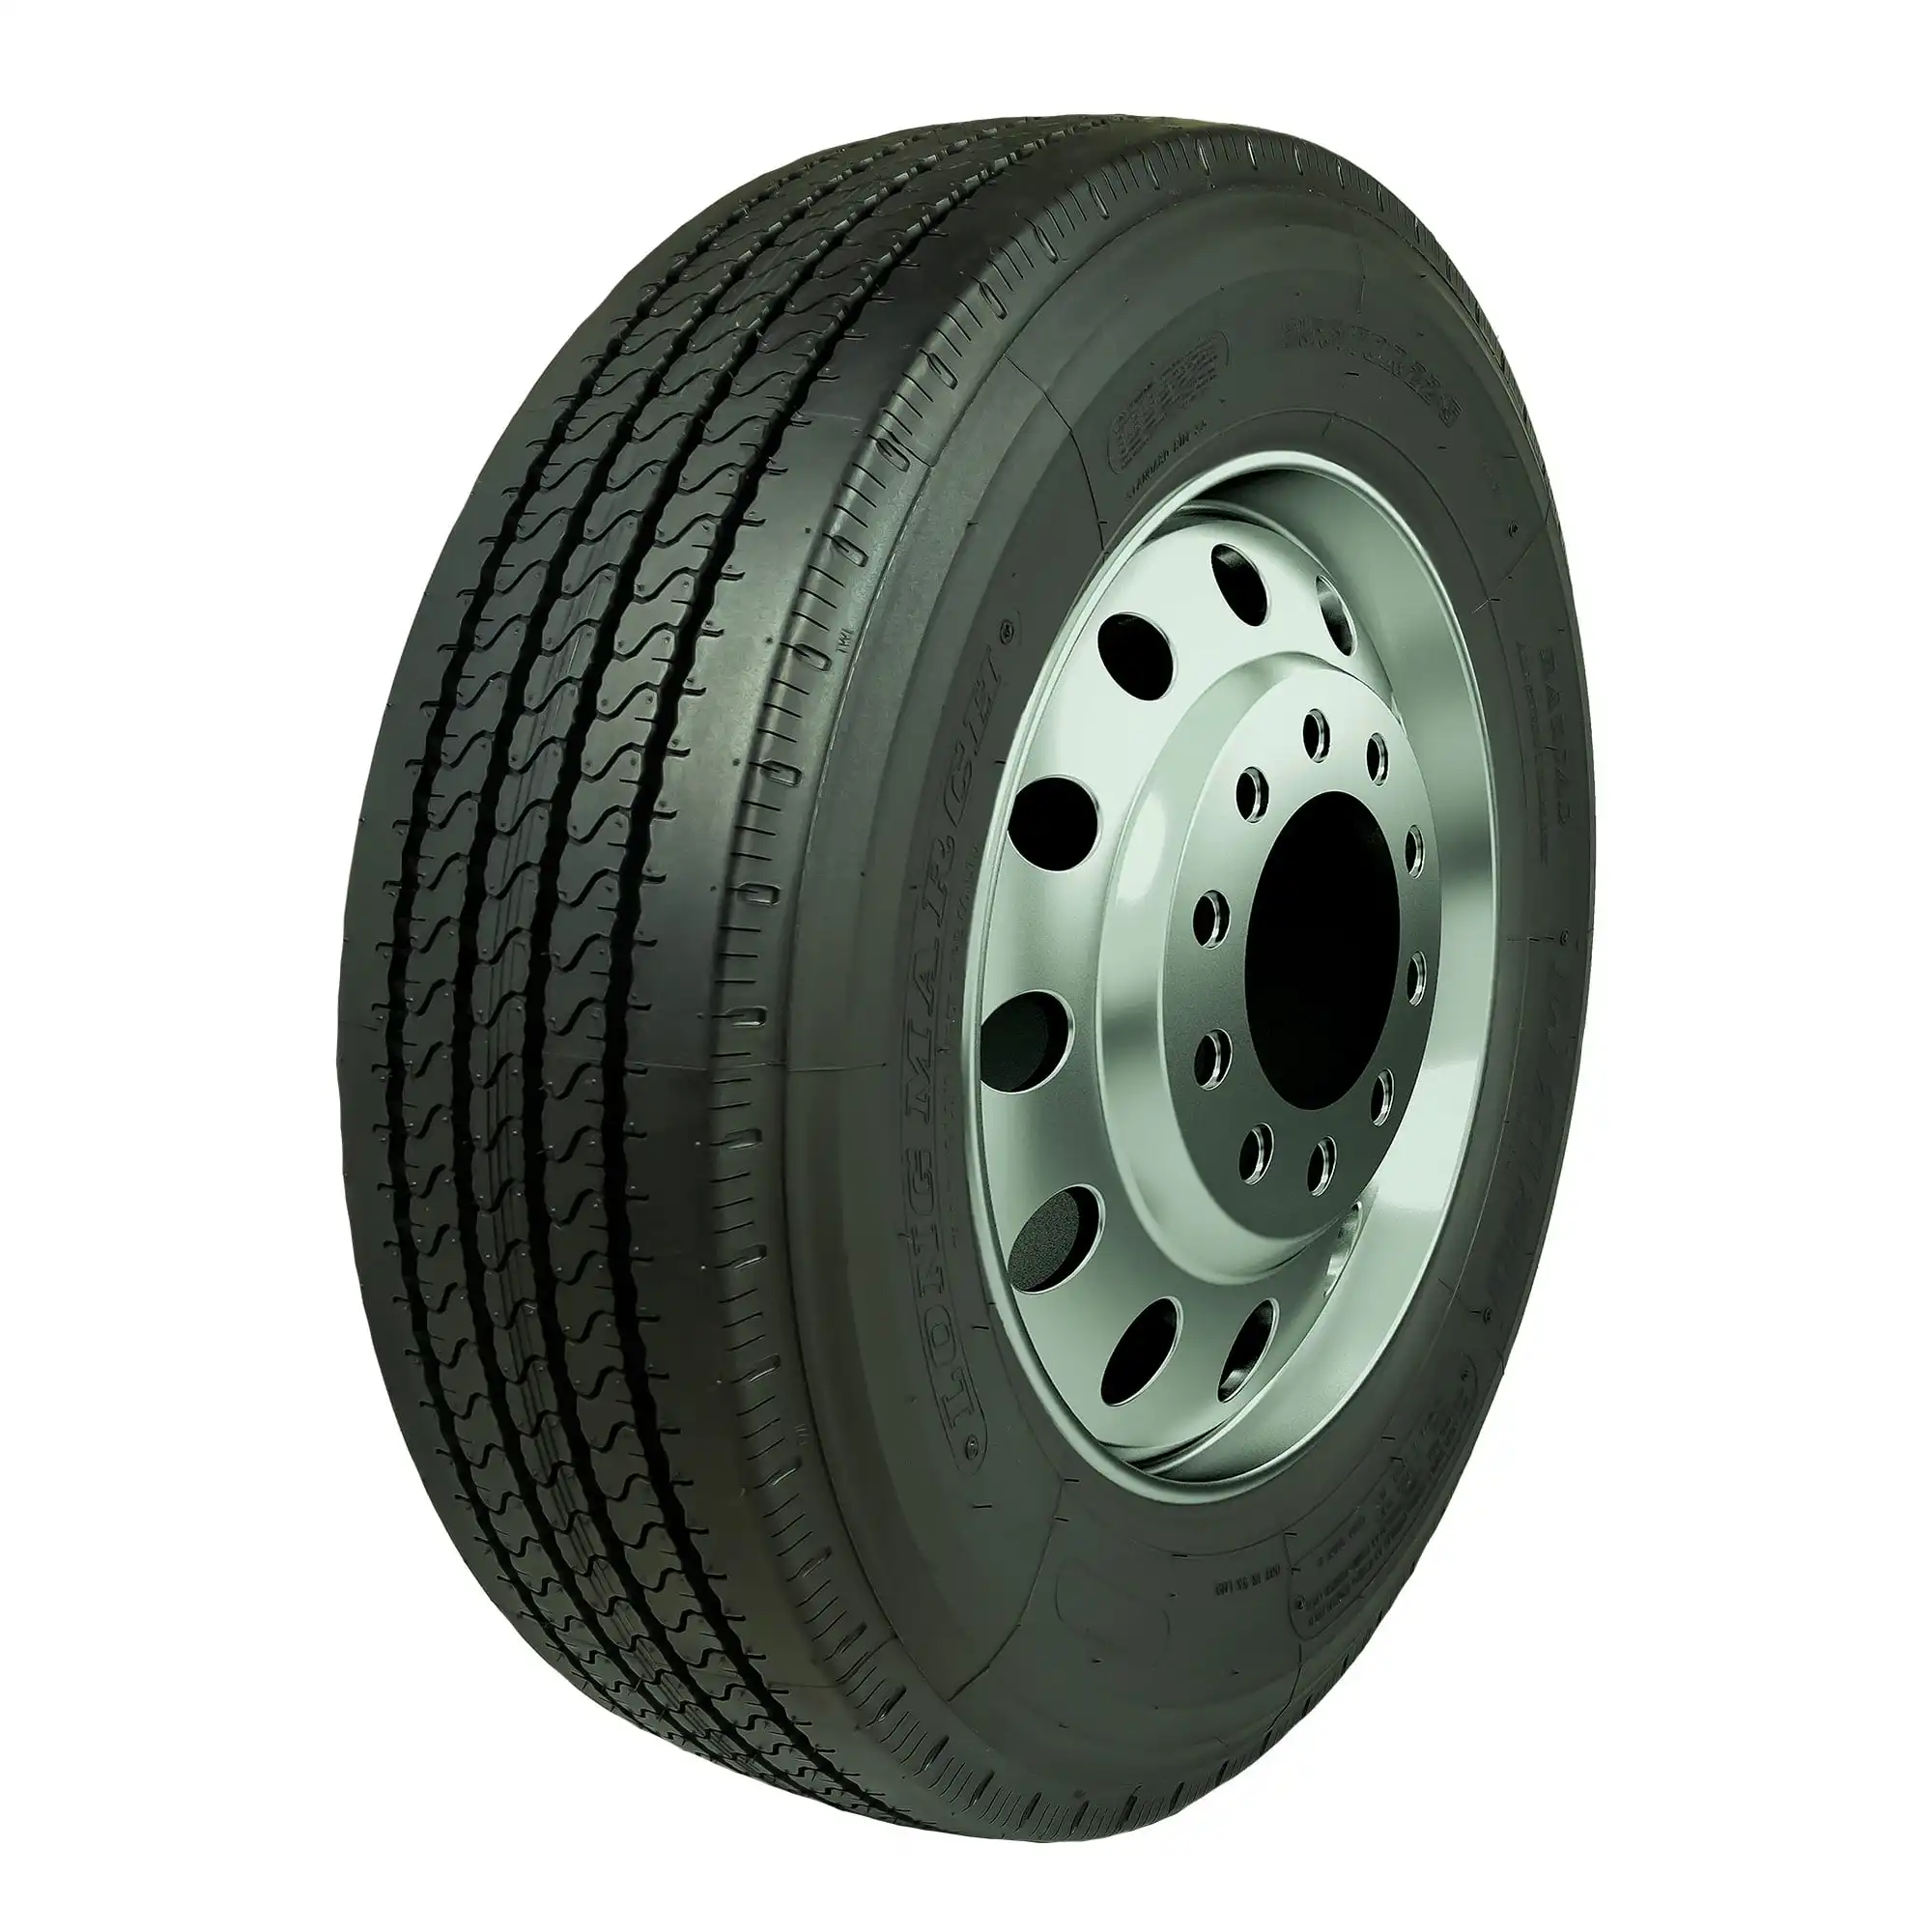 Neumáticos de ruedas comerciales de alta calidad neumáticos de camión de precios bajos 275/70r22.5 255/70r22.5 11R24.5 285/75R24.5 11r22.5 295 75 22,5